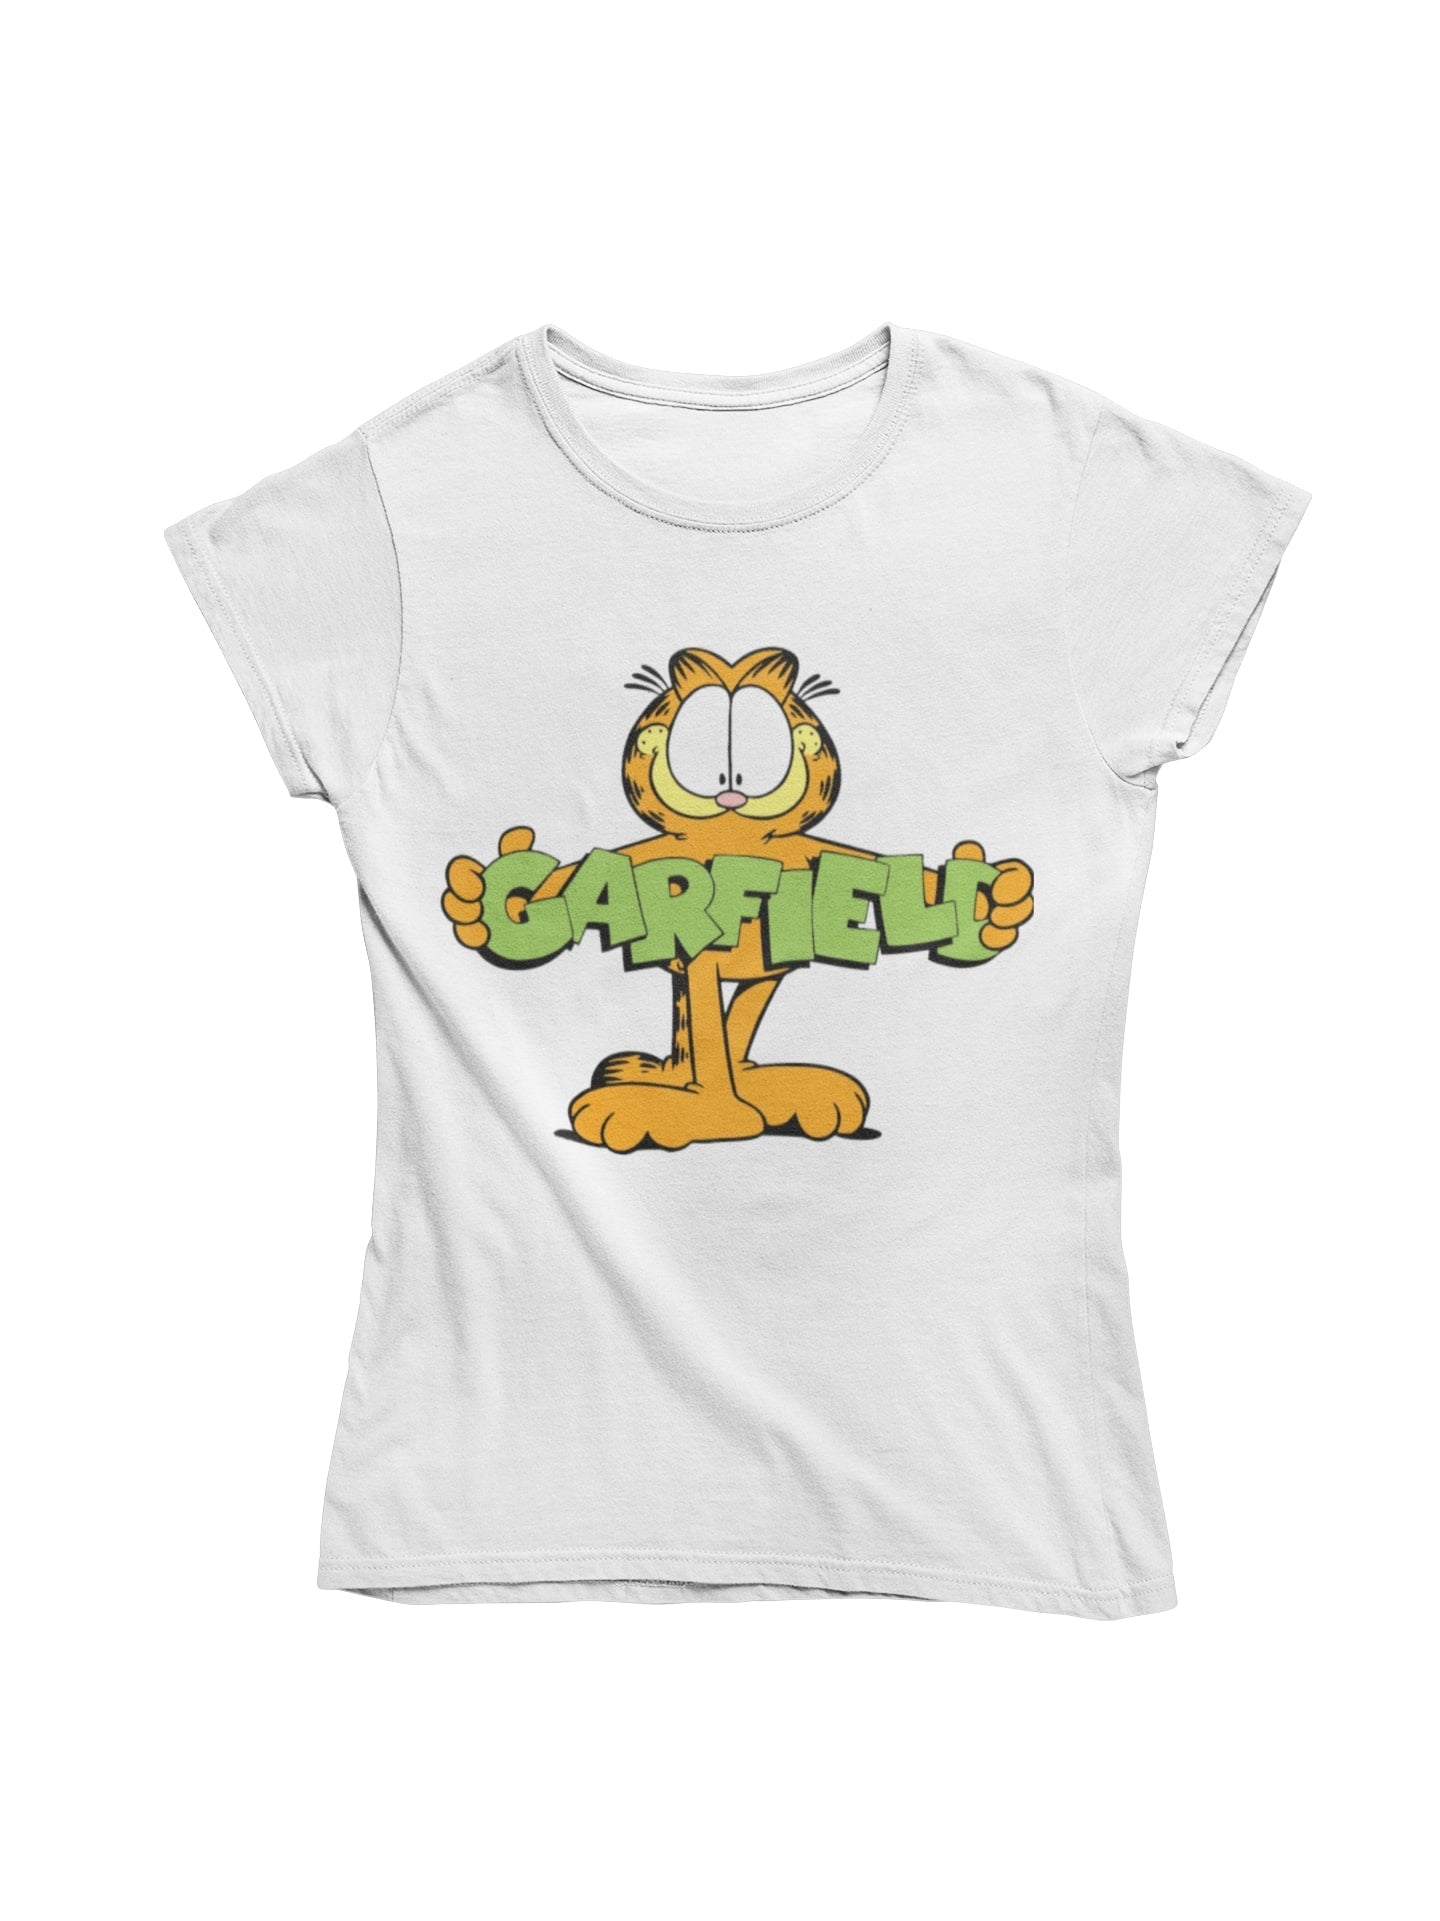 thelegalgang,Garfield-Holding logo-T shirt for Women,WOMEN.